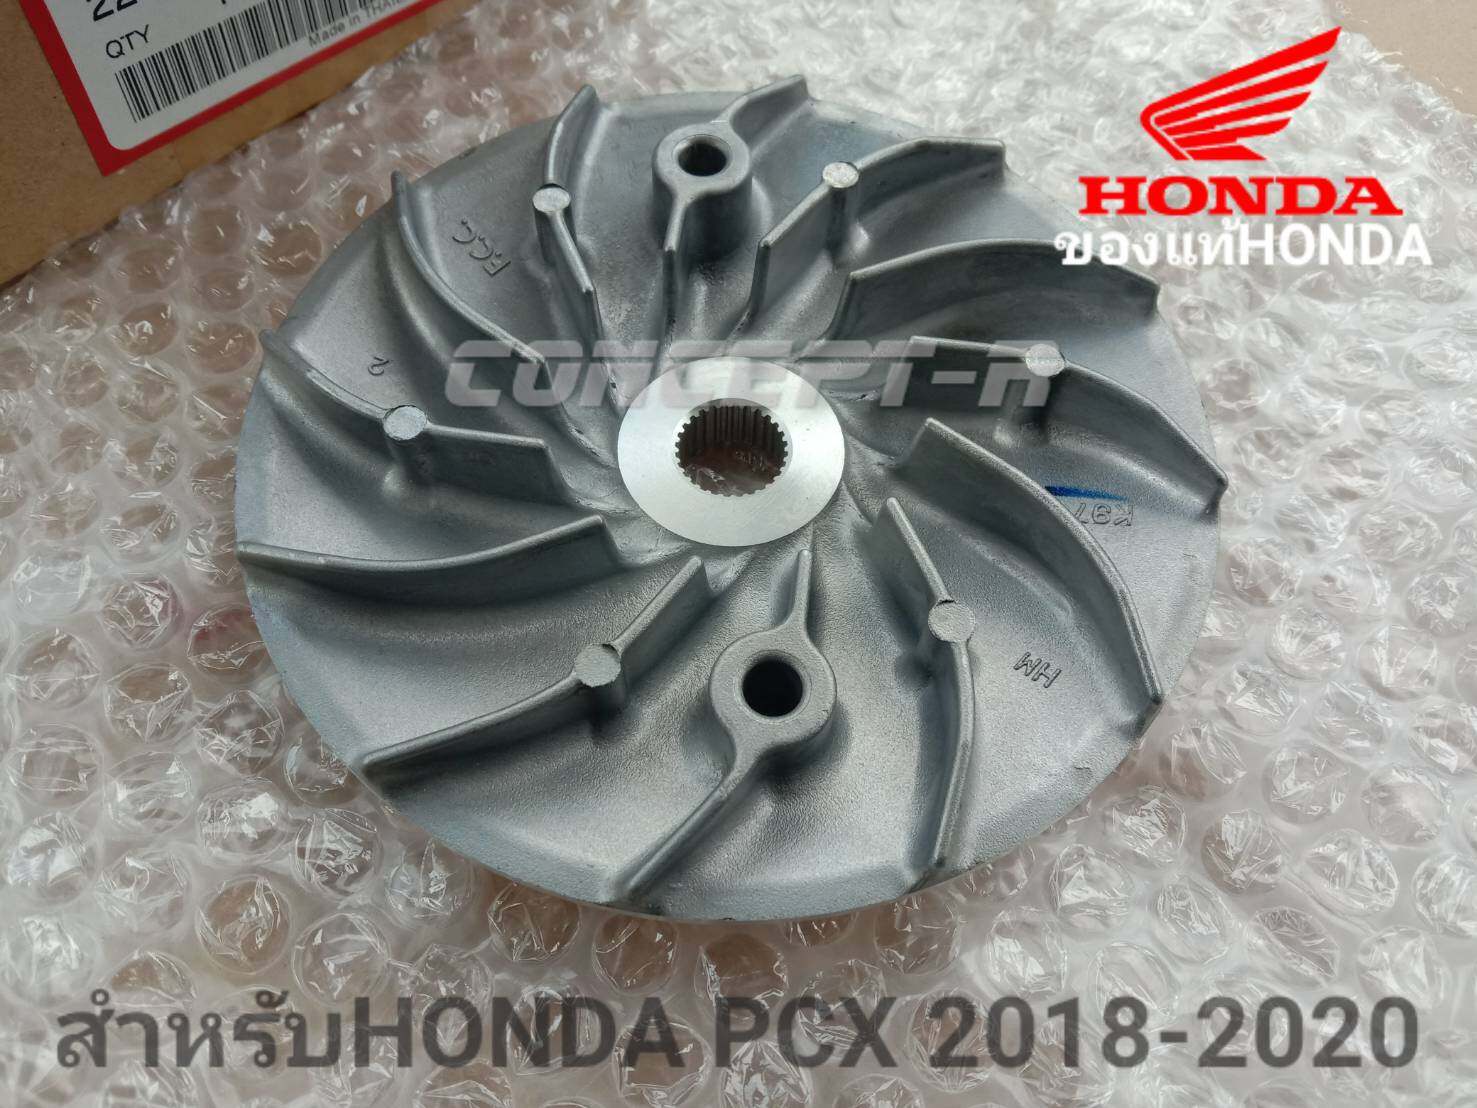 ชามใบพัดตัวนอก HONDA PCX2018-2020